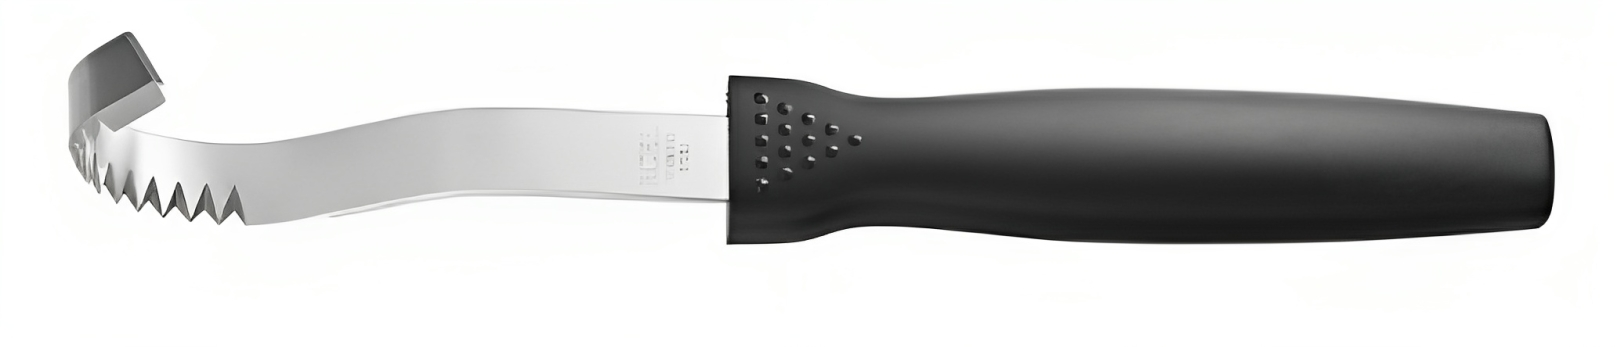 Нож для масла 90-190 мм. фигурный ручка пластик Icel